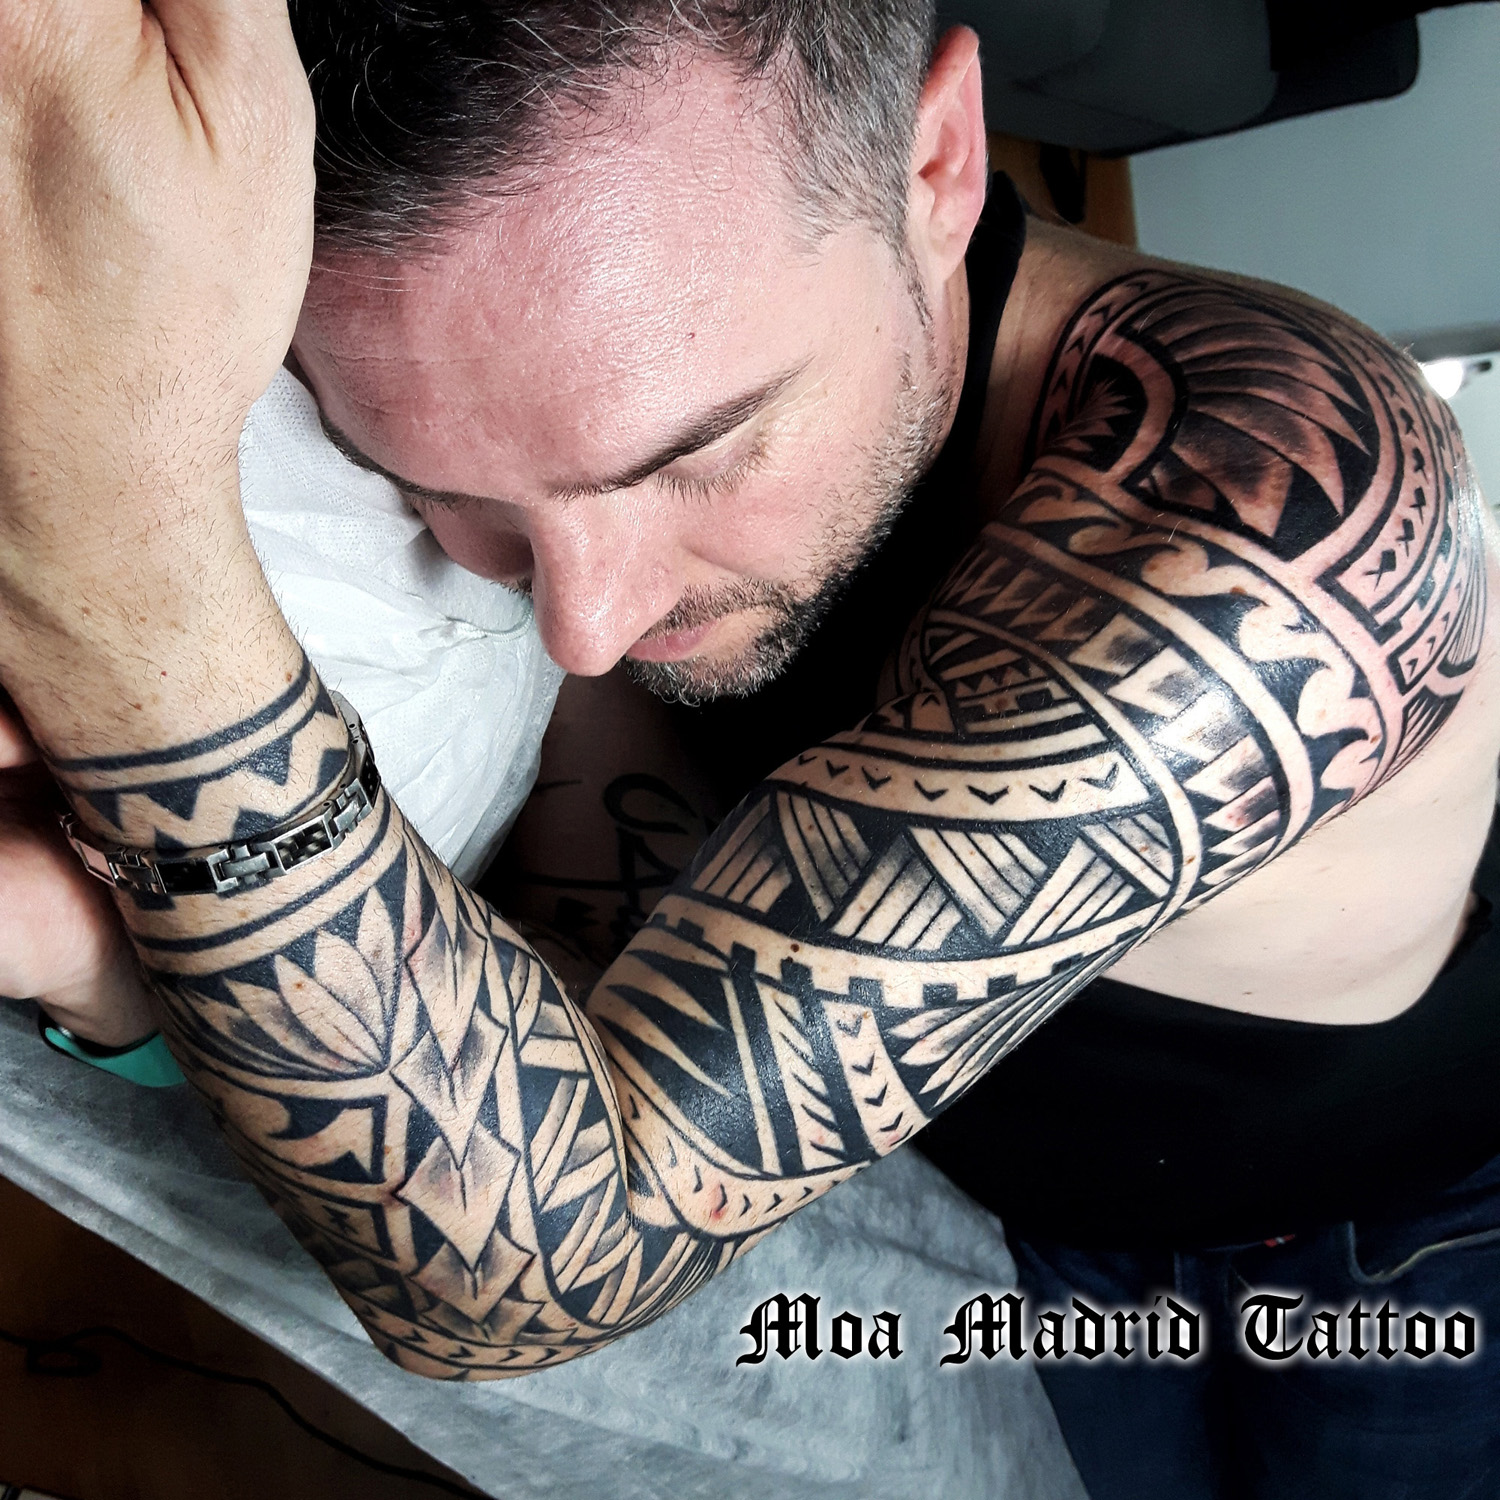 Brazo entero tatuado estilo maorí en Madrid | Moa Madrid Tattoo